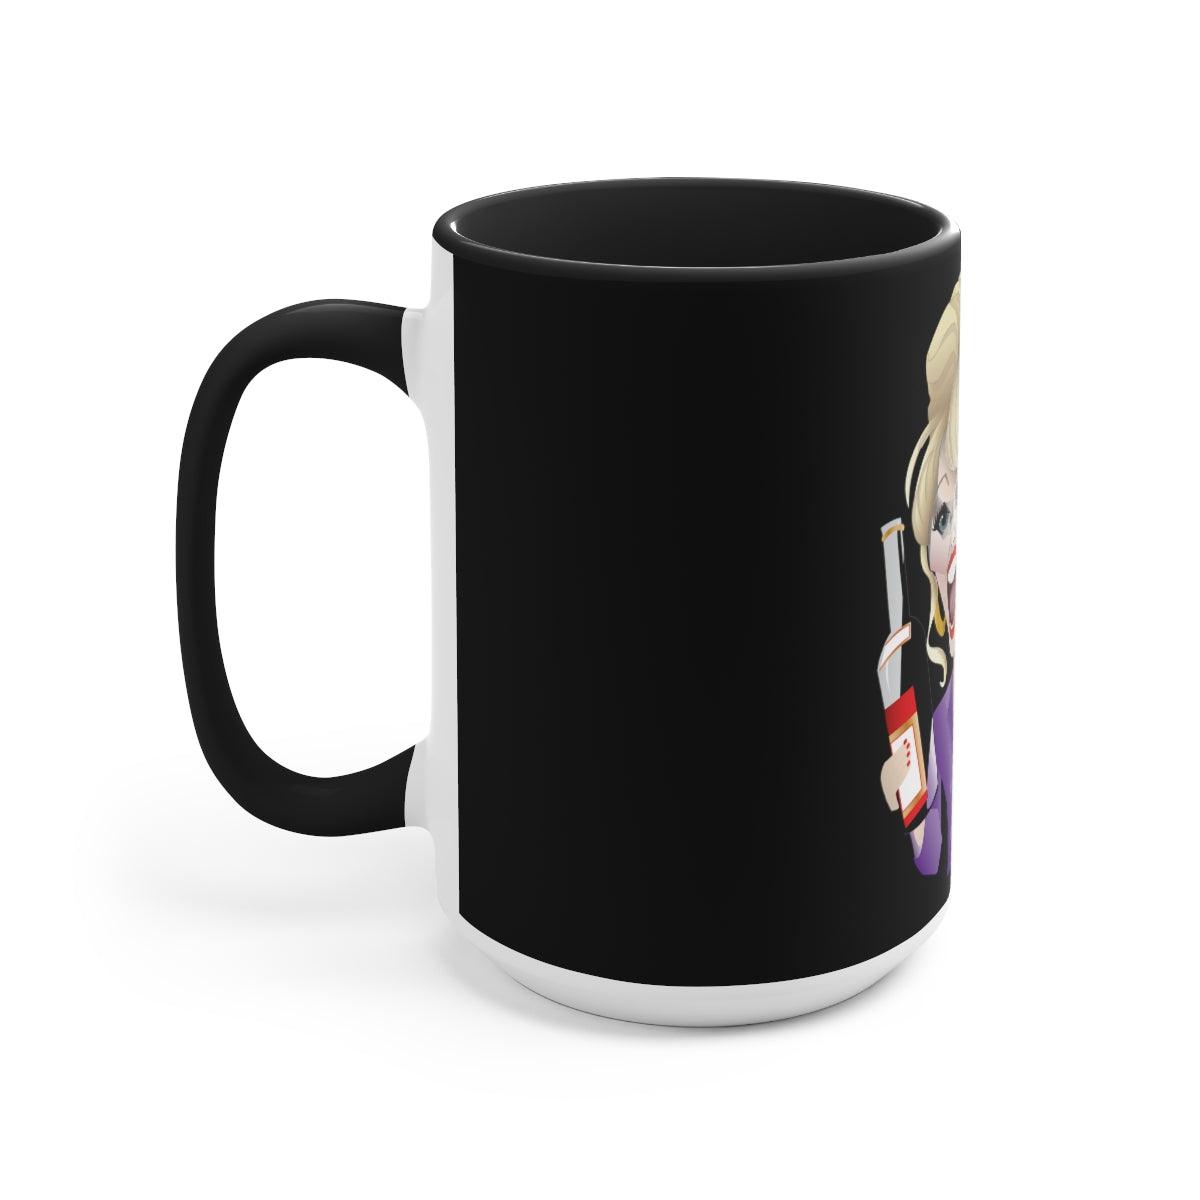 Patsy Stone Parody Coffee Mug - Wicked Naughty Apparel